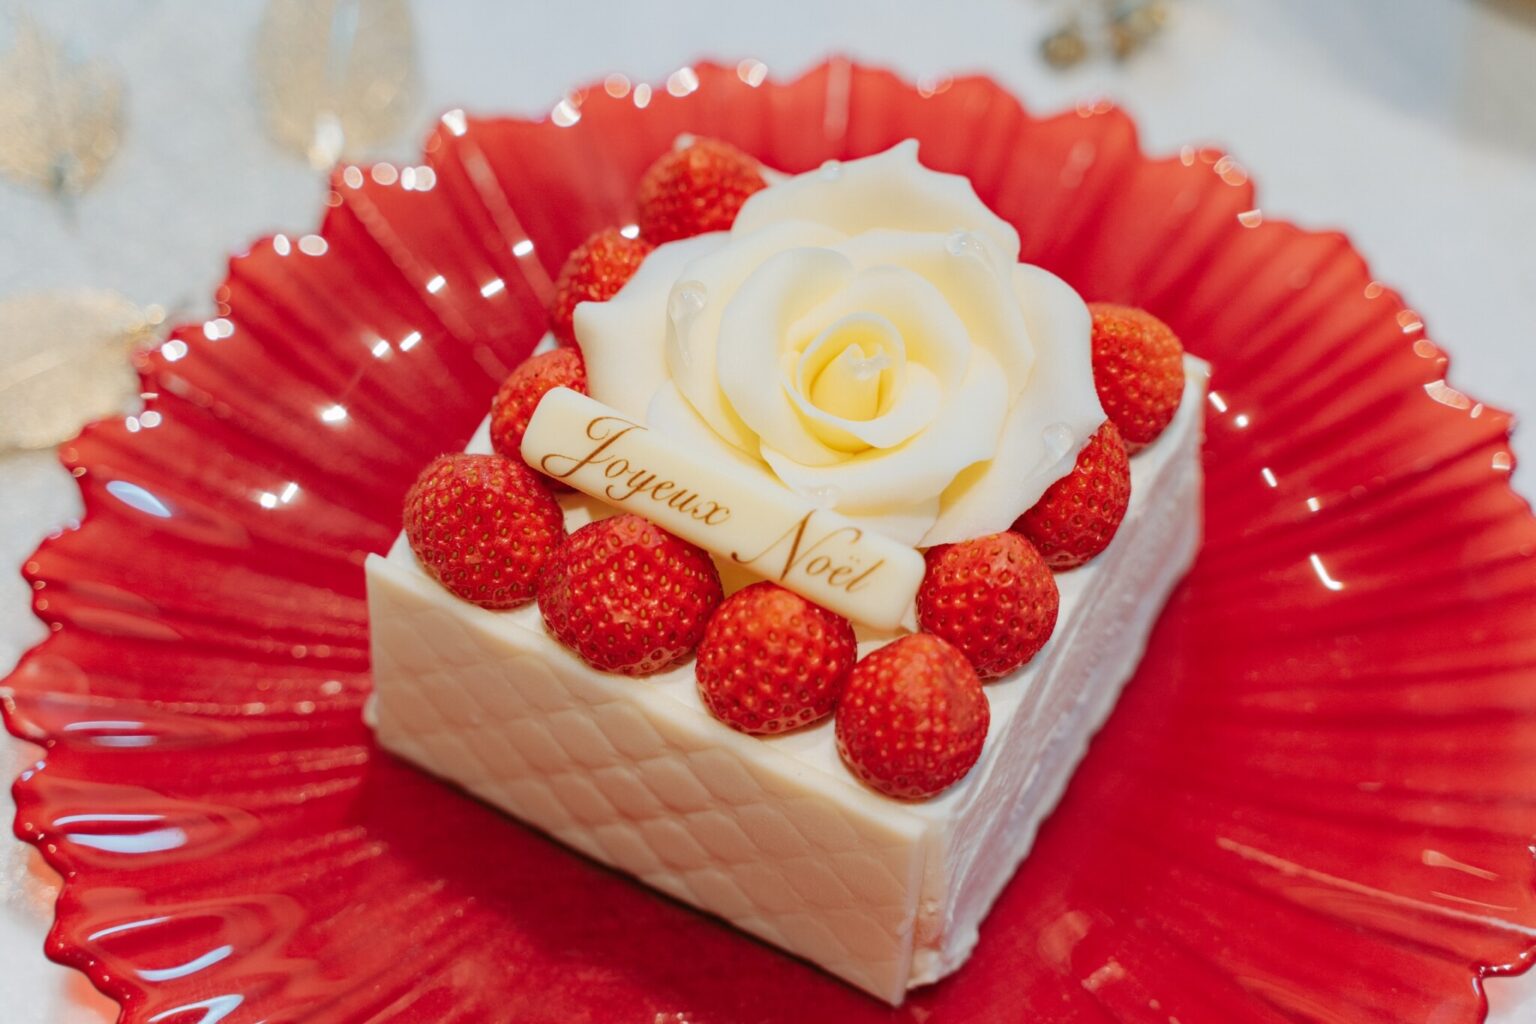 「ガトー・ド・ノエル」5,000円。※50台限定 販売店舗名：東洋軒 東京ステーション（グランスタ東京）
国産苺を使った贅沢なケーキ。ホワイトチョコレートで作られた白い薔薇が美しい……。